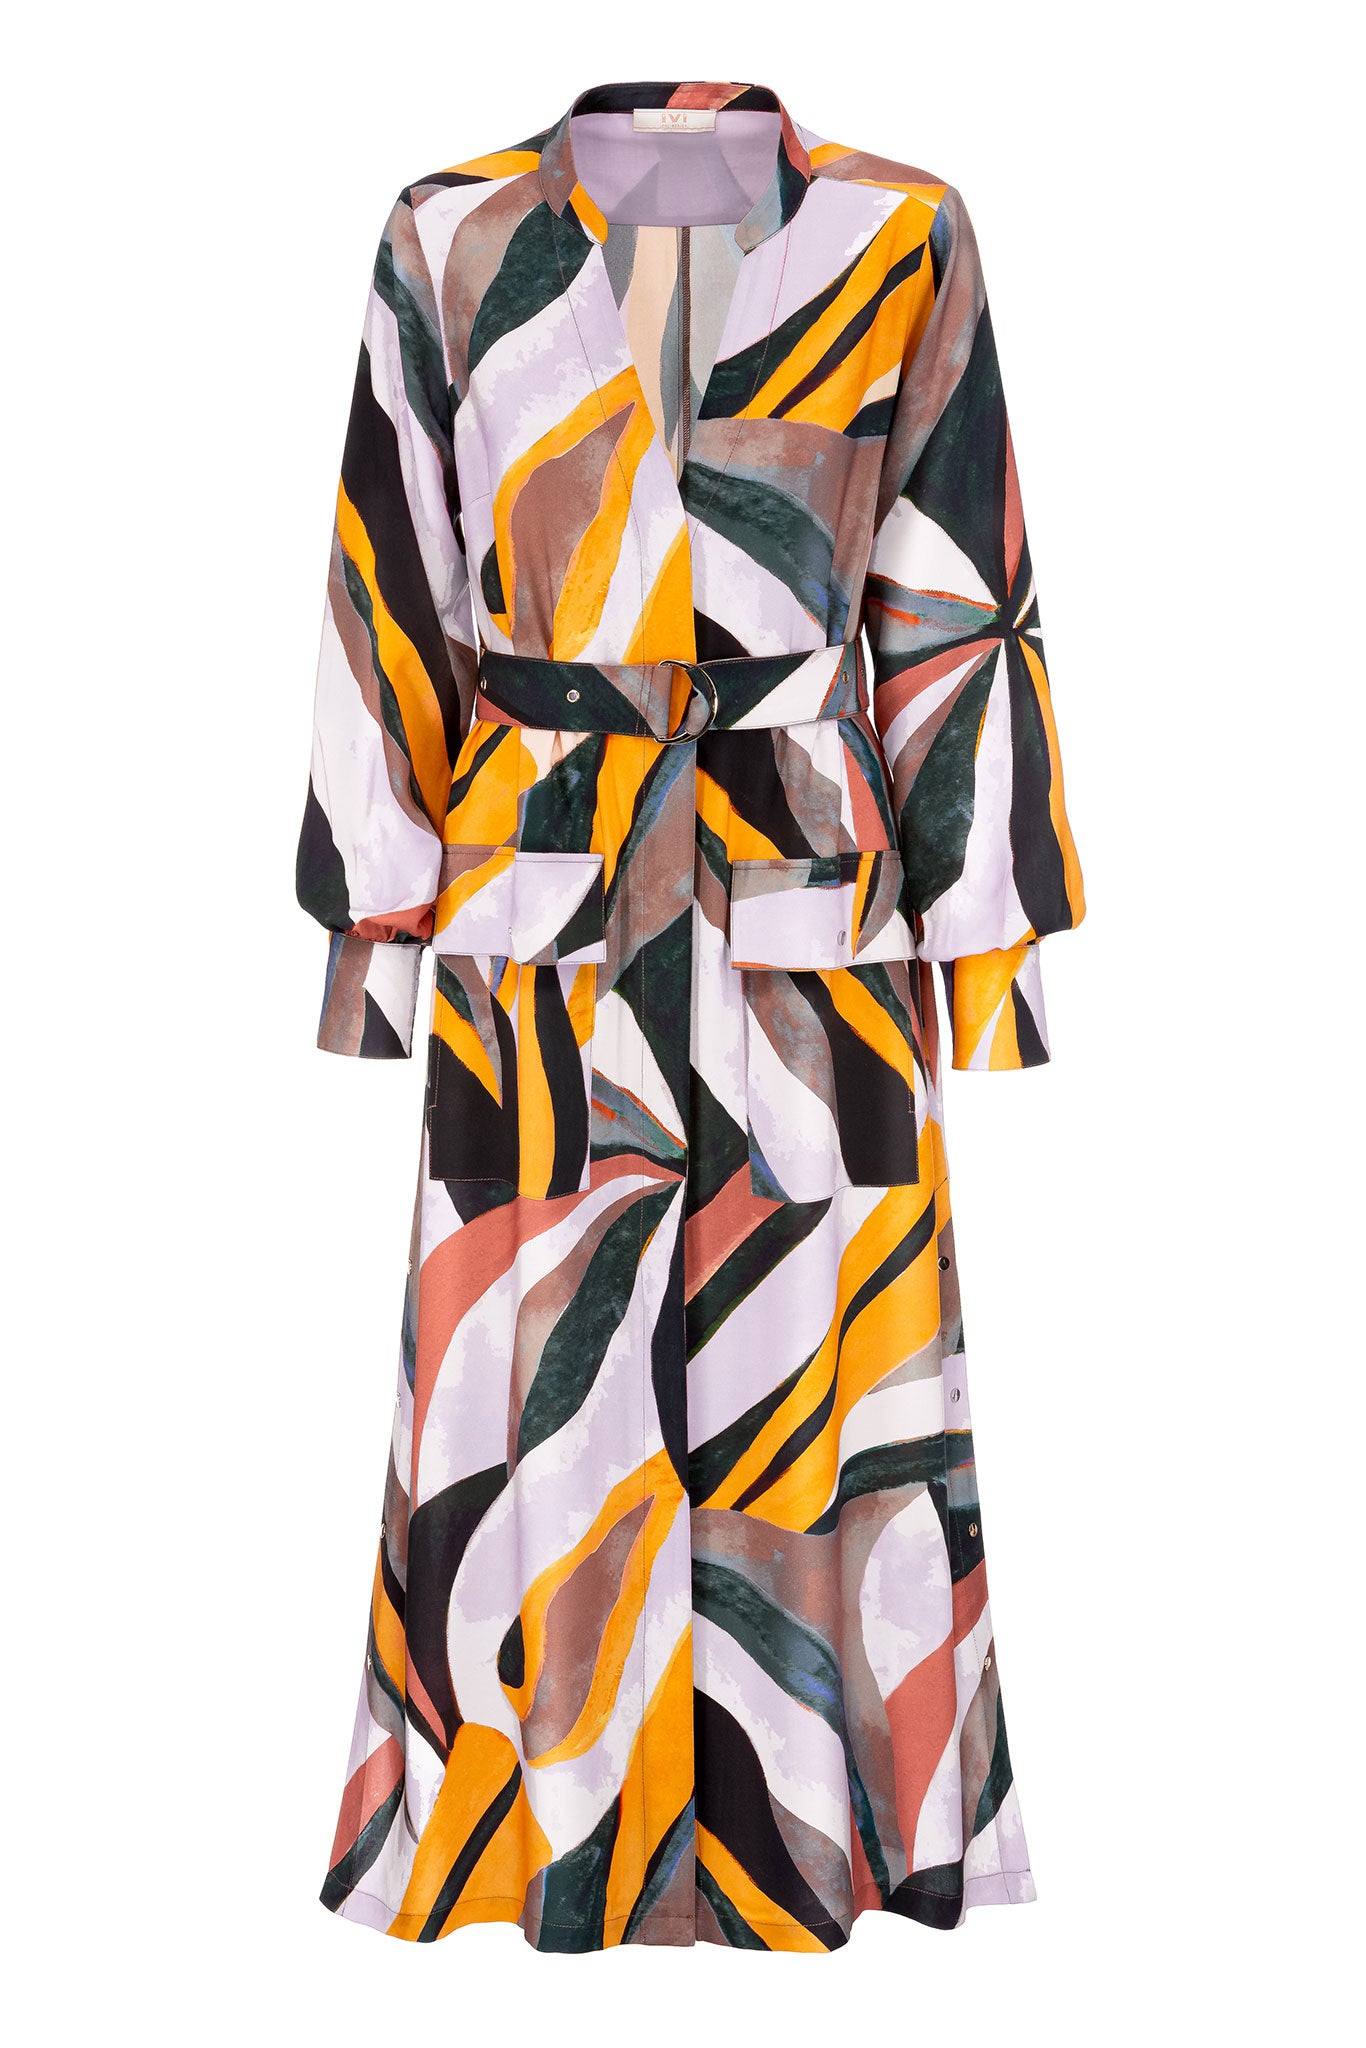 IVI Collection - TUCAN Kleid multicolor